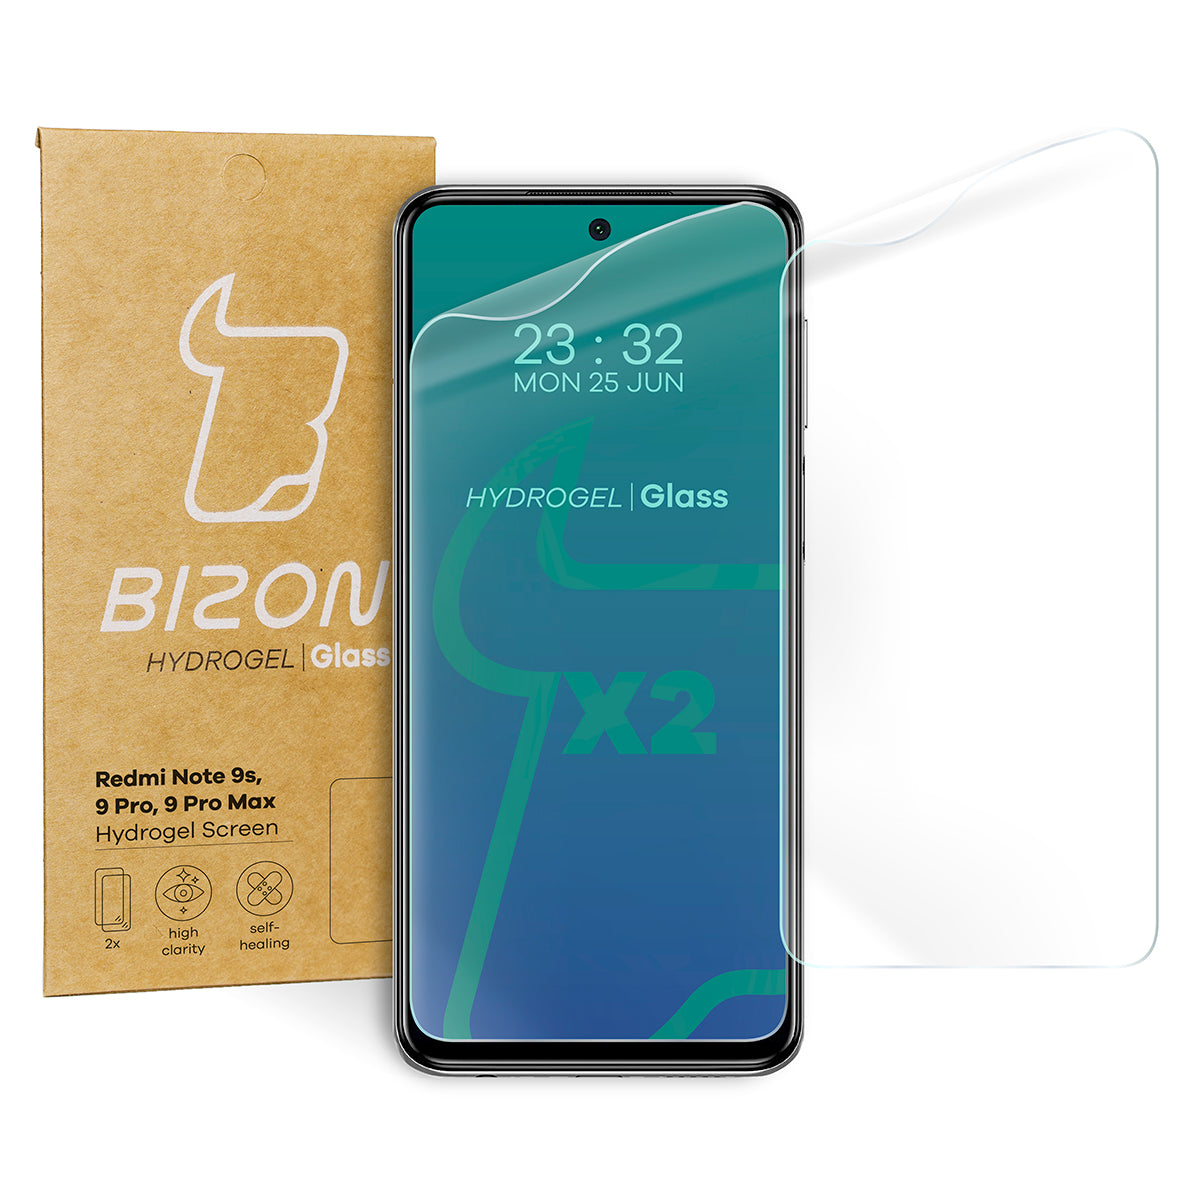 Hydrogel Folie für den Bildschirm Bizon Glass, Xiaomi Redmi Note 9S / 9 Pro / 9 Pro Max, 2 Stück